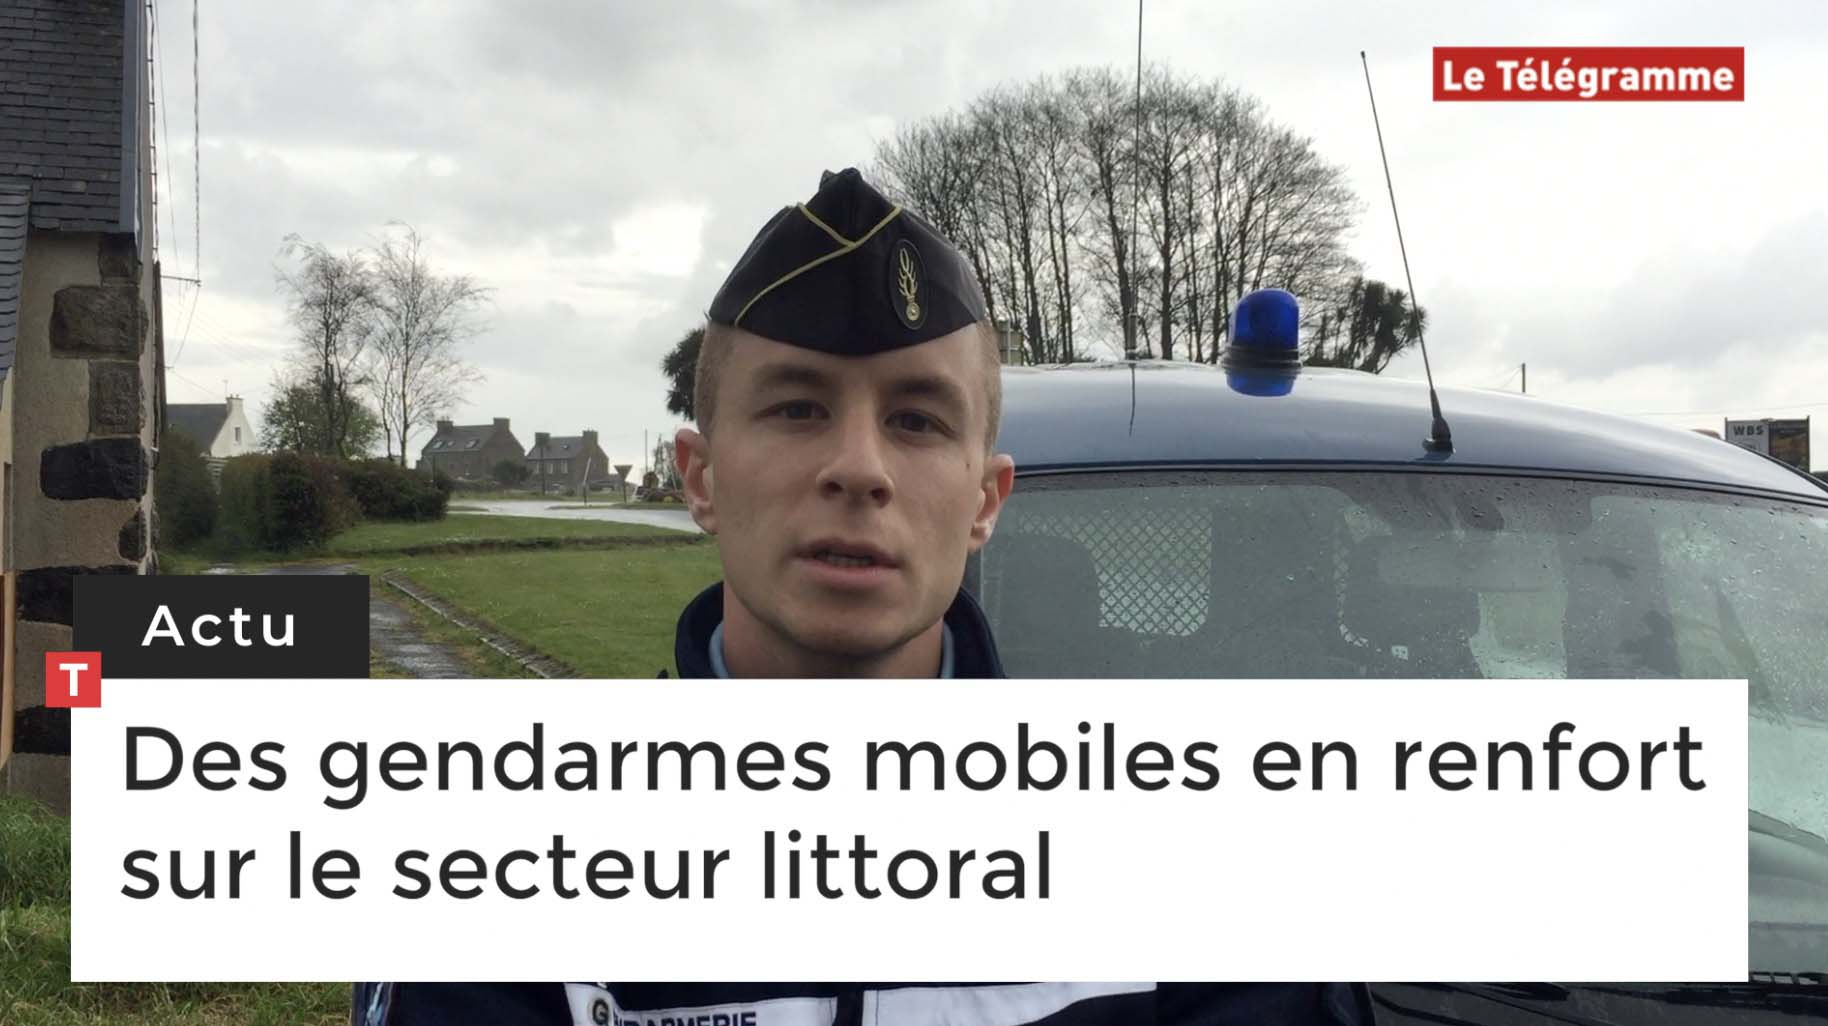 Morlaix. Un peloton de gendarmes mobiles de Mayenne en renfort (Le Télégramme)